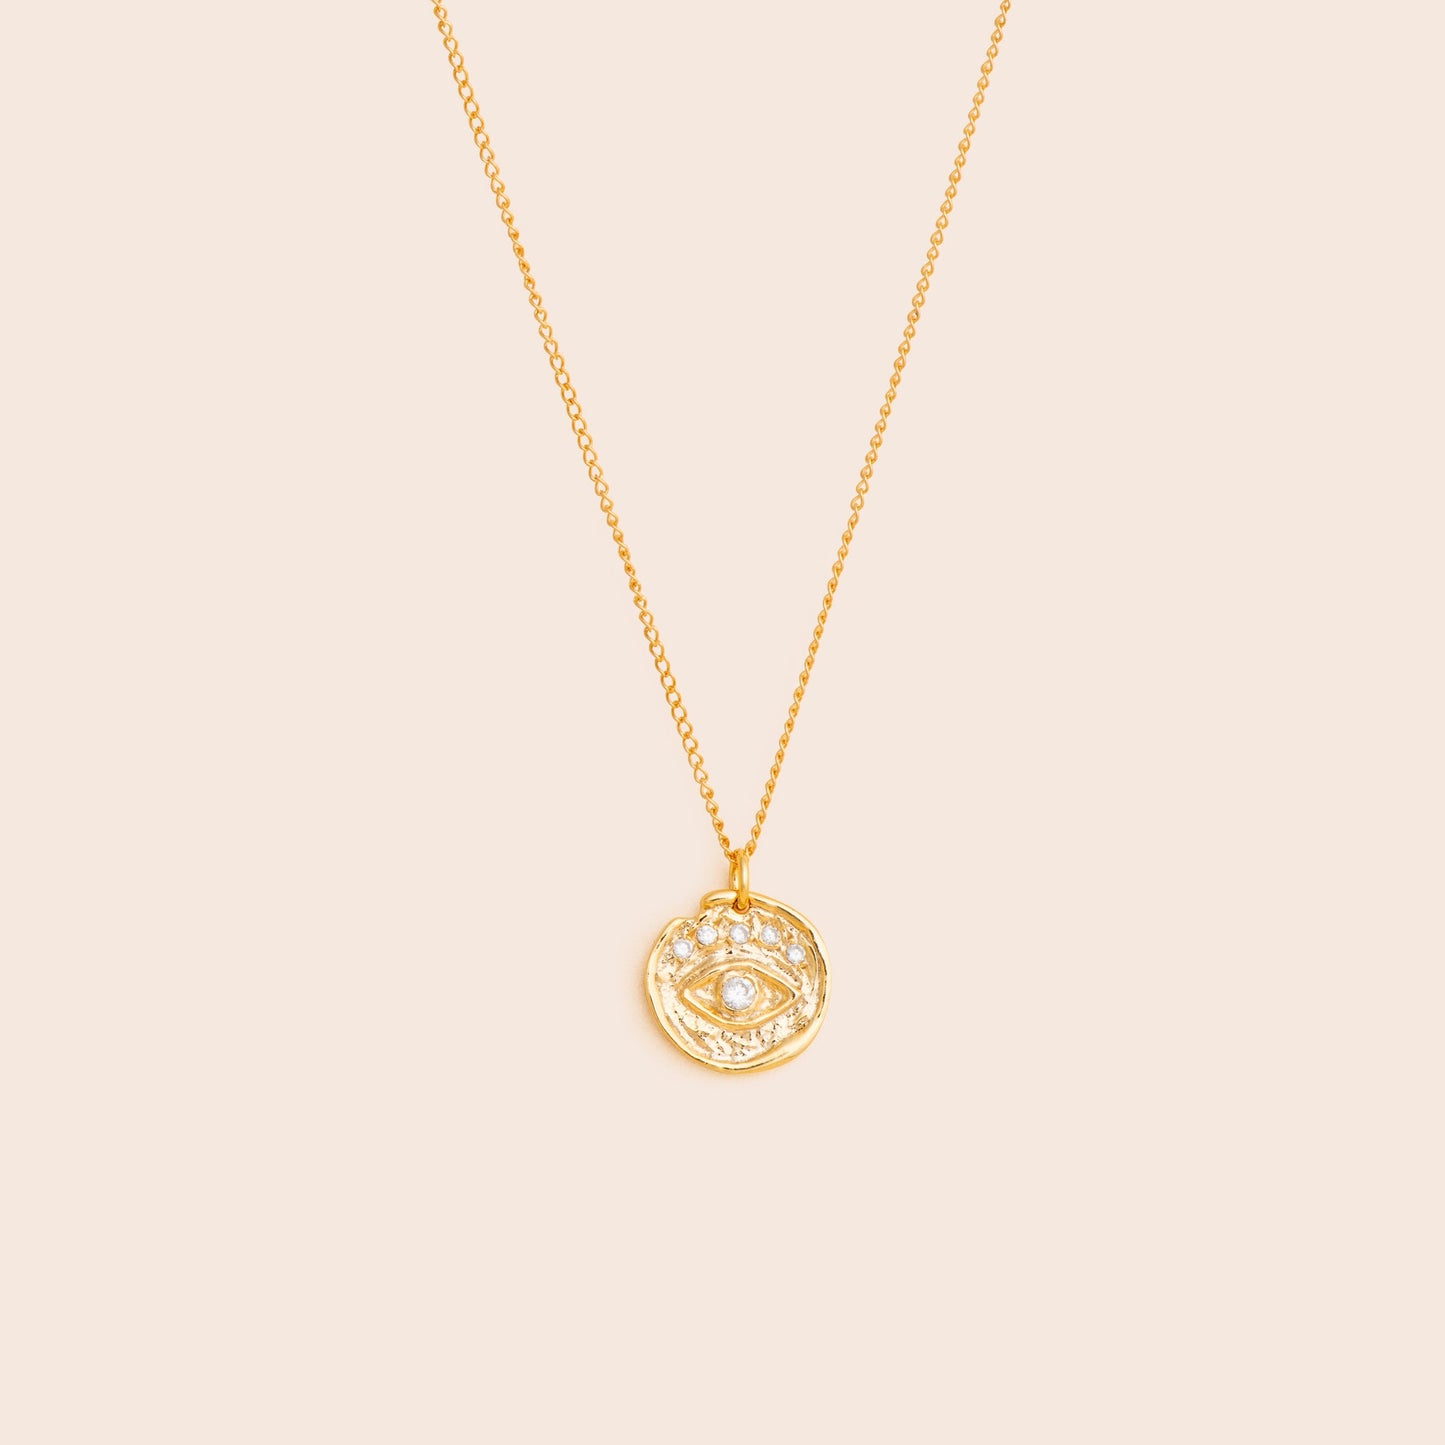 Evil Eye Medallion Necklace - Gold Filled - Gemlet